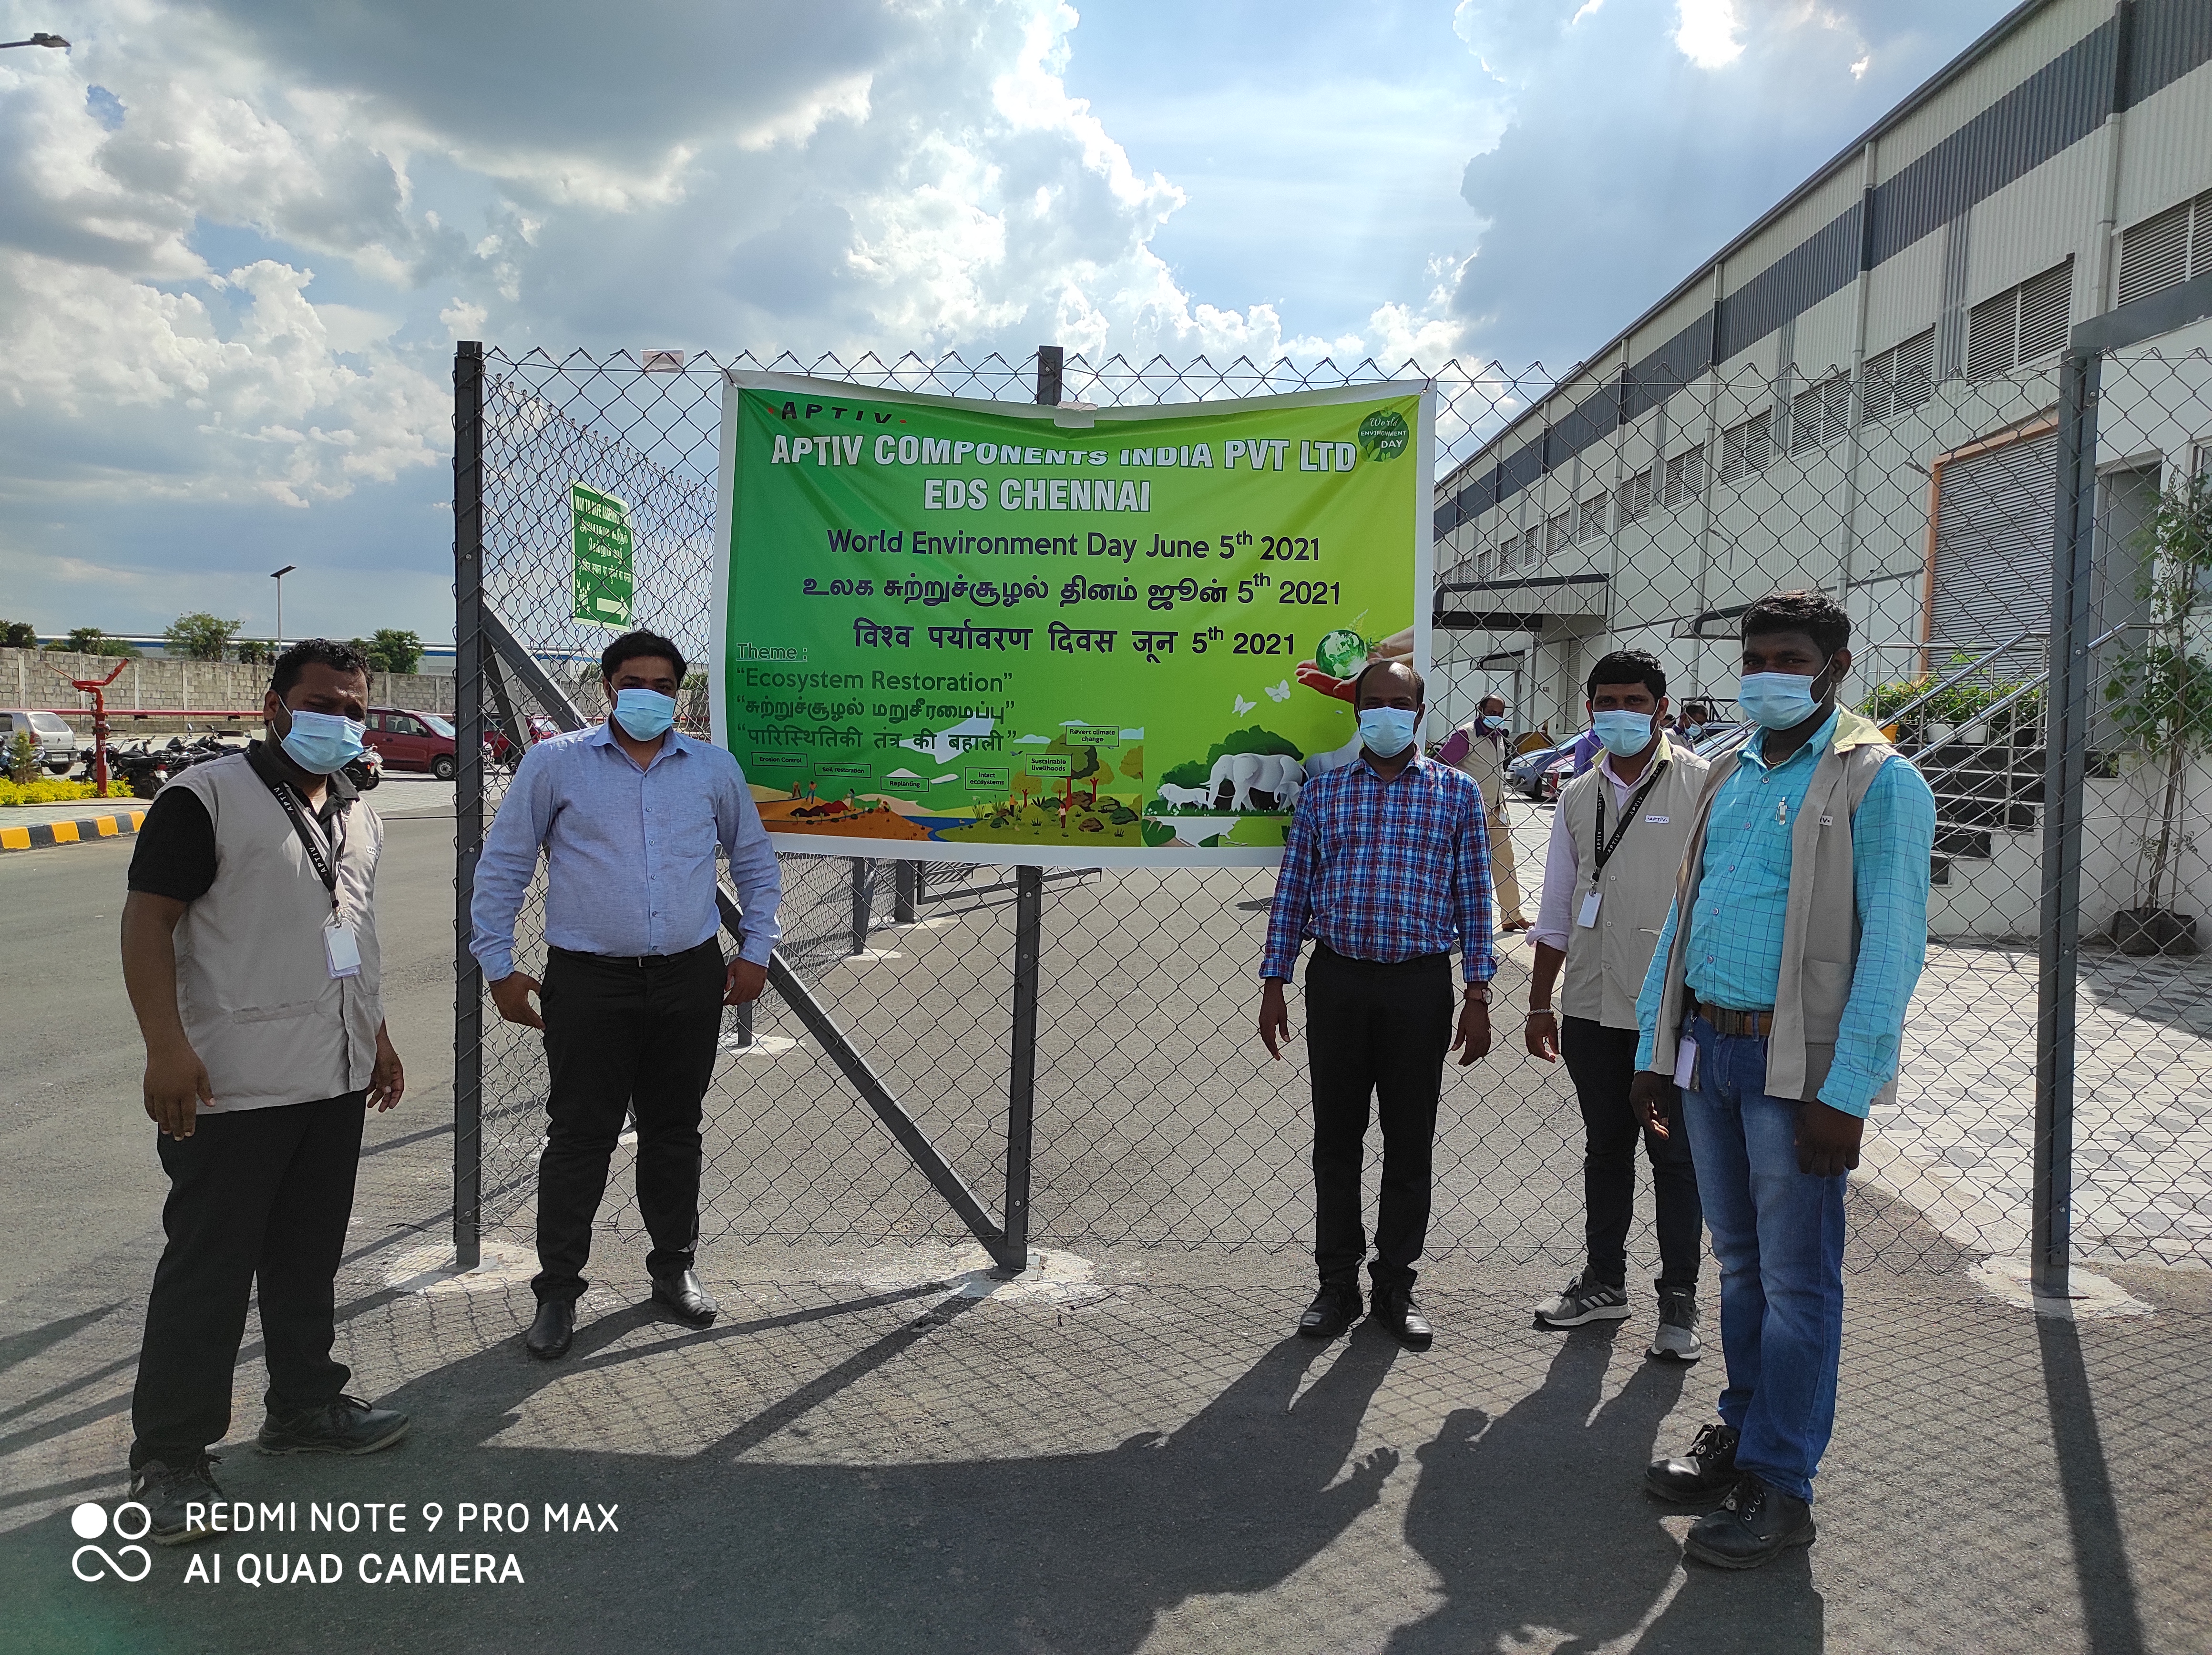 Aptiv employees with educational banner about Aptiv sustainability commitments